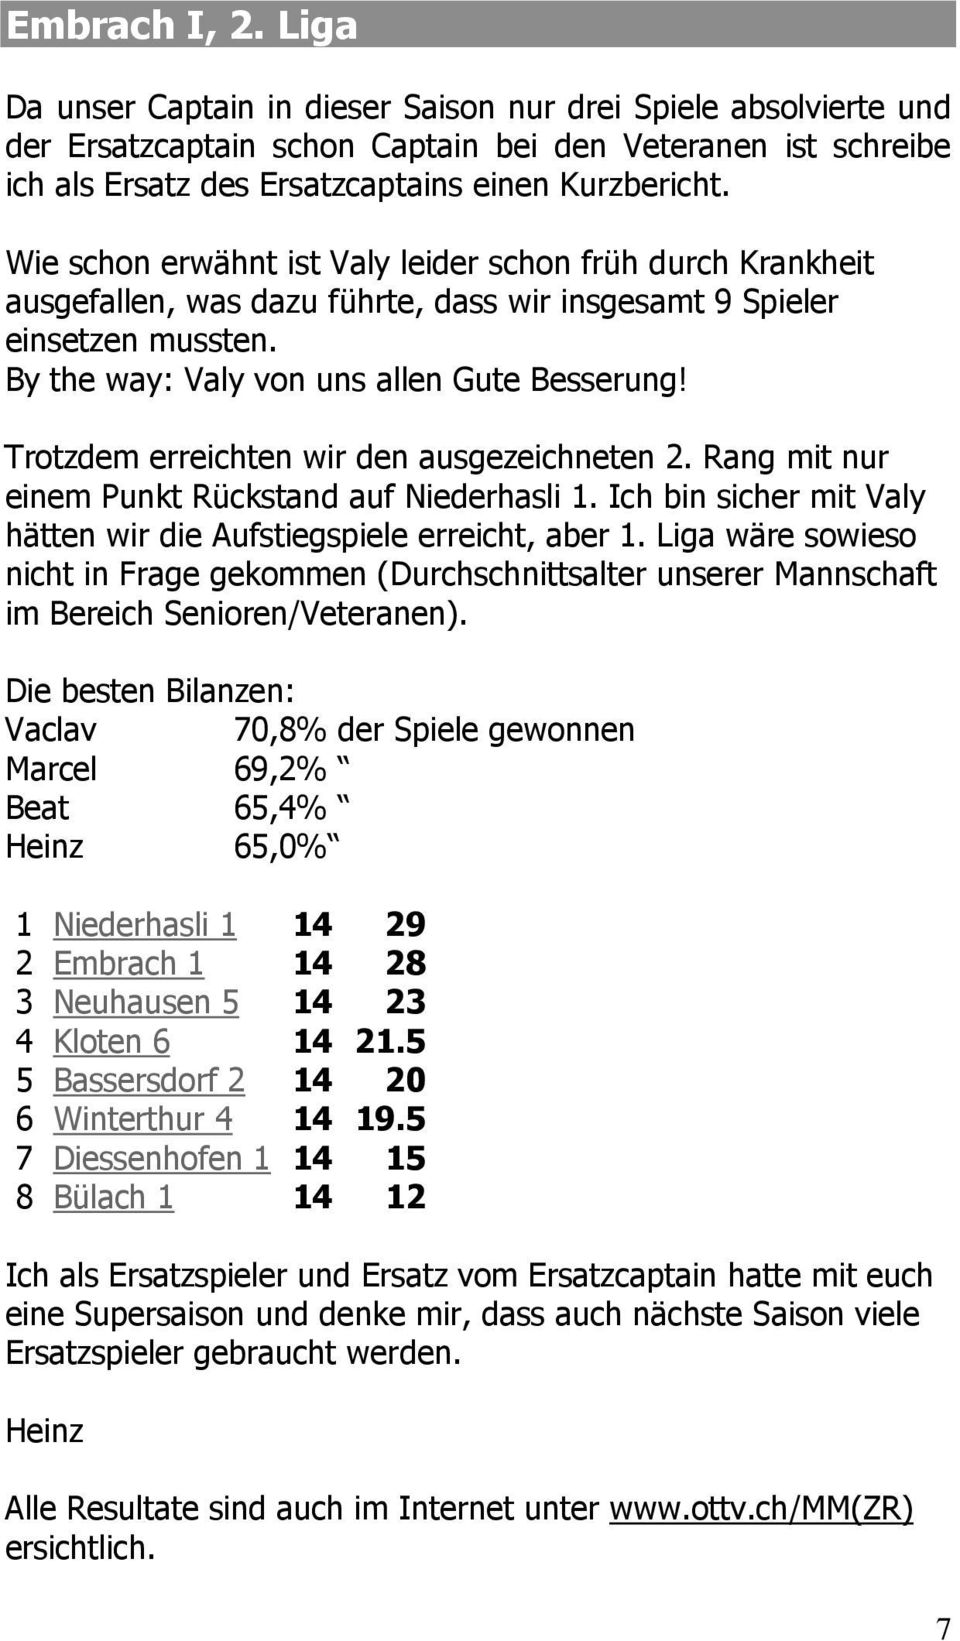 Trotzdem erreichten wir den ausgezeichneten 2. Rang mit nur einem Punkt Rückstand auf Niederhasli 1. Ich bin sicher mit Valy hätten wir die Aufstiegspiele erreicht, aber 1.